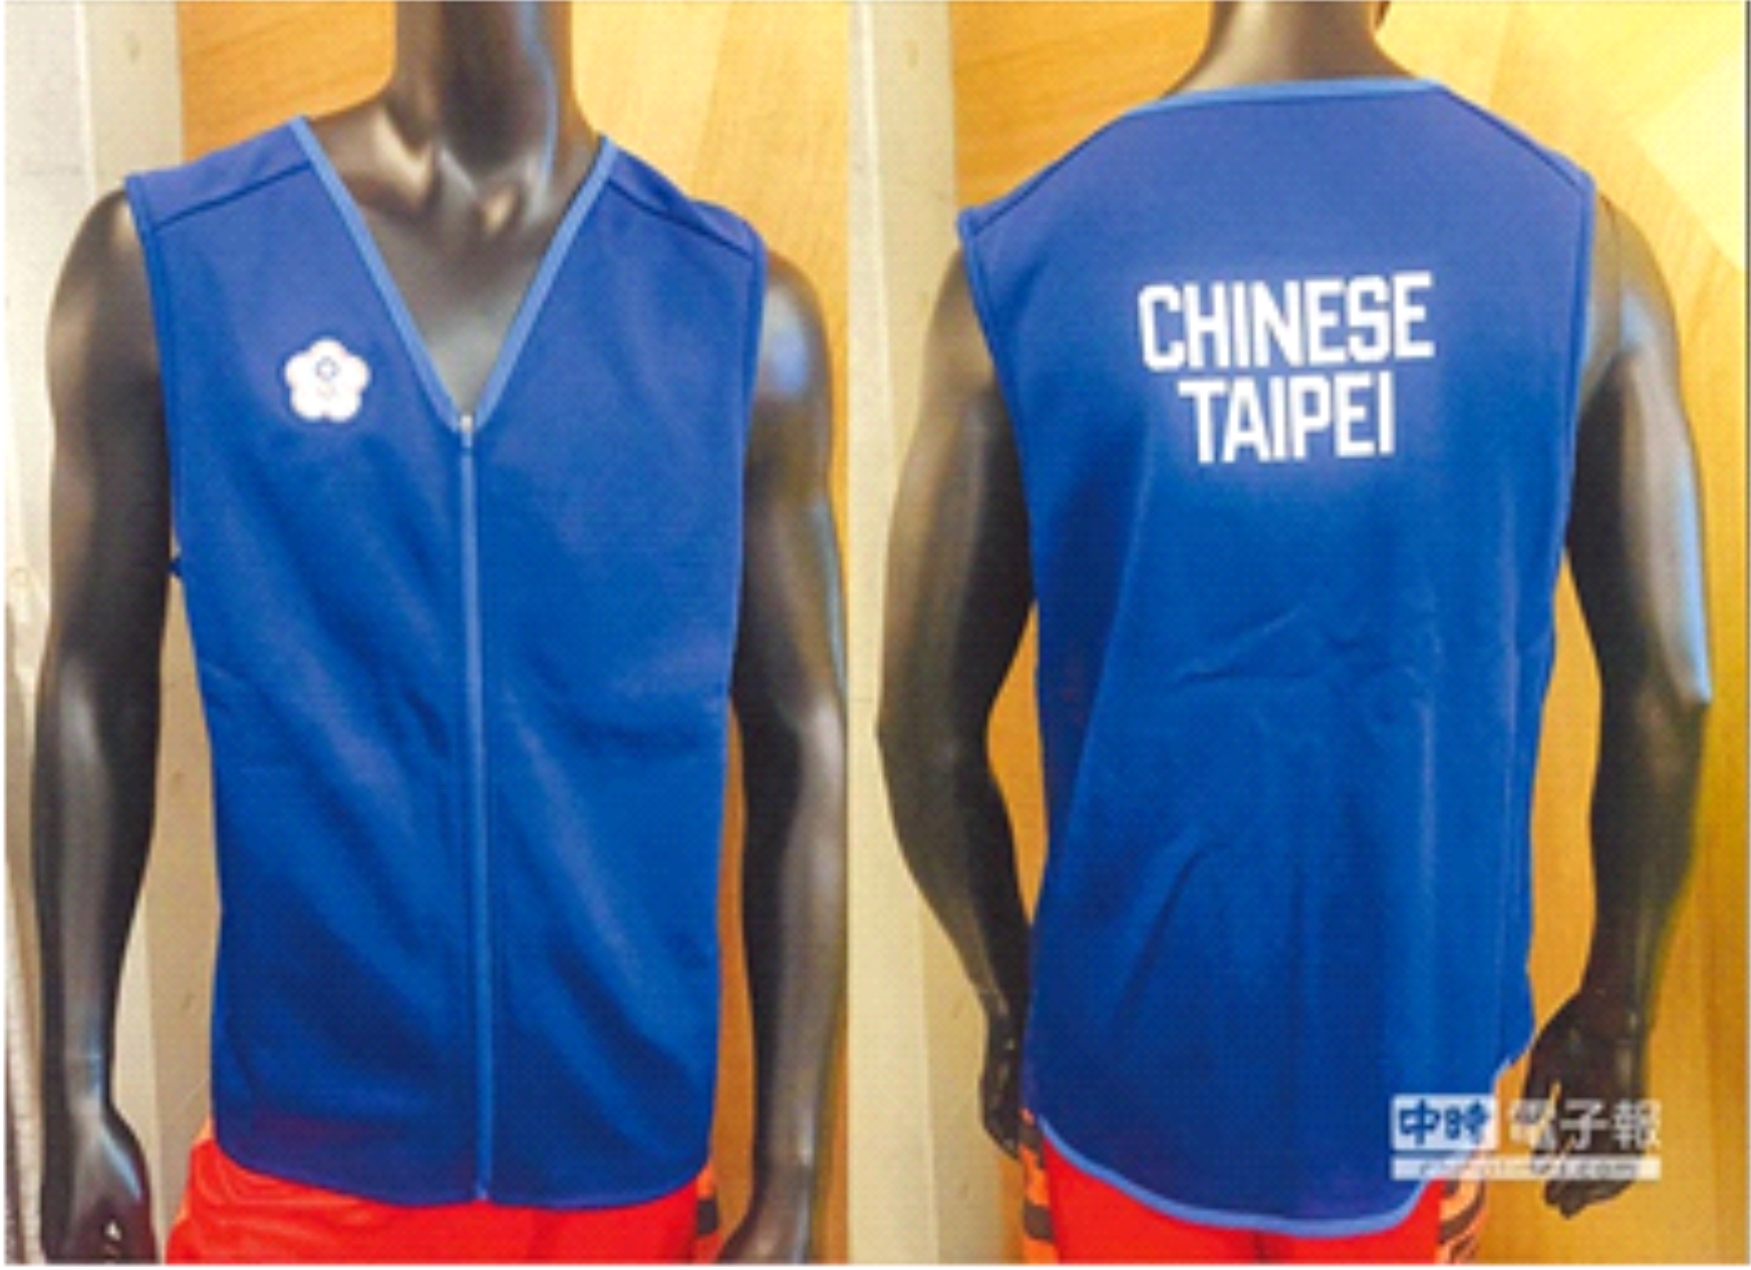 寶特瓶變球衣台灣製造揚威國際  Chai nhựa trở thành áo thể thao Đài Loan sản xuất dương uy thế giới